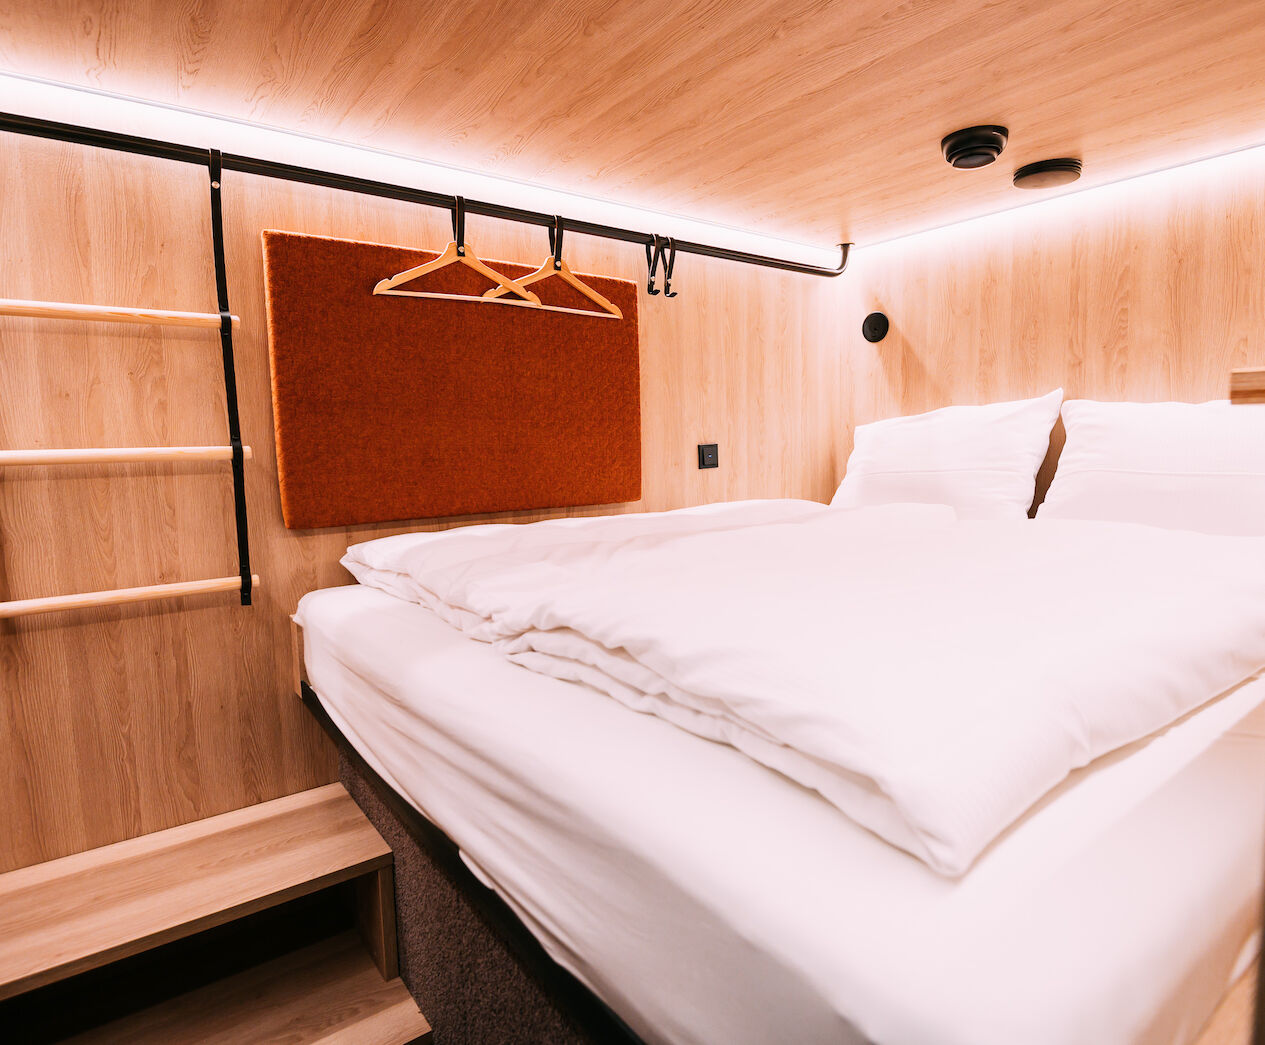 double bed in cabin in hostel hamburg - hotel hamburg cheap - booking hotel in hamburg - CAB20